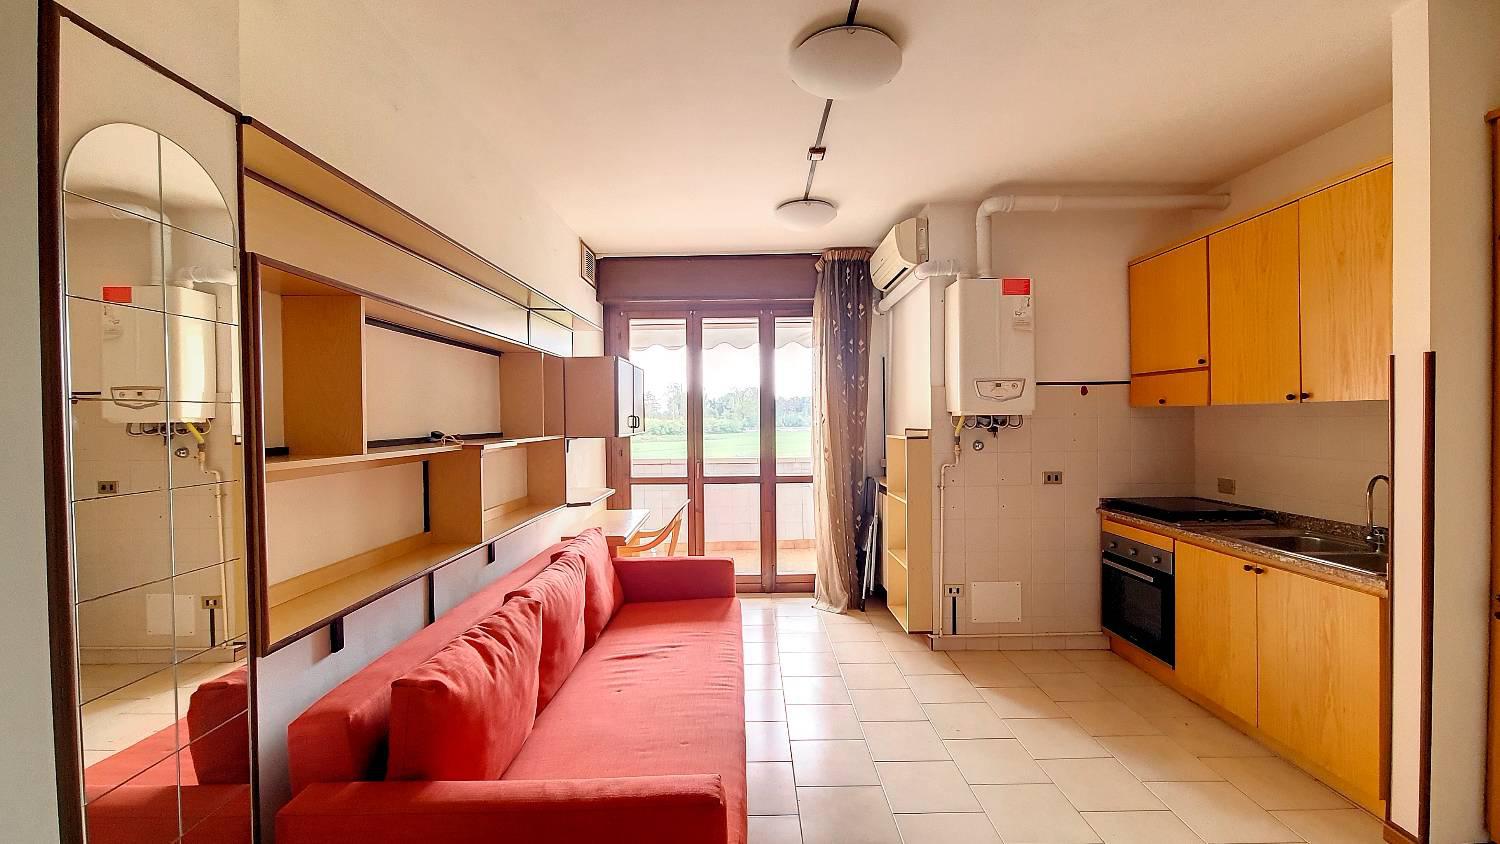 Appartamento in vendita a Lainate, 1 locali, zona Zona: Barbaiana, prezzo € 70.000 | CambioCasa.it